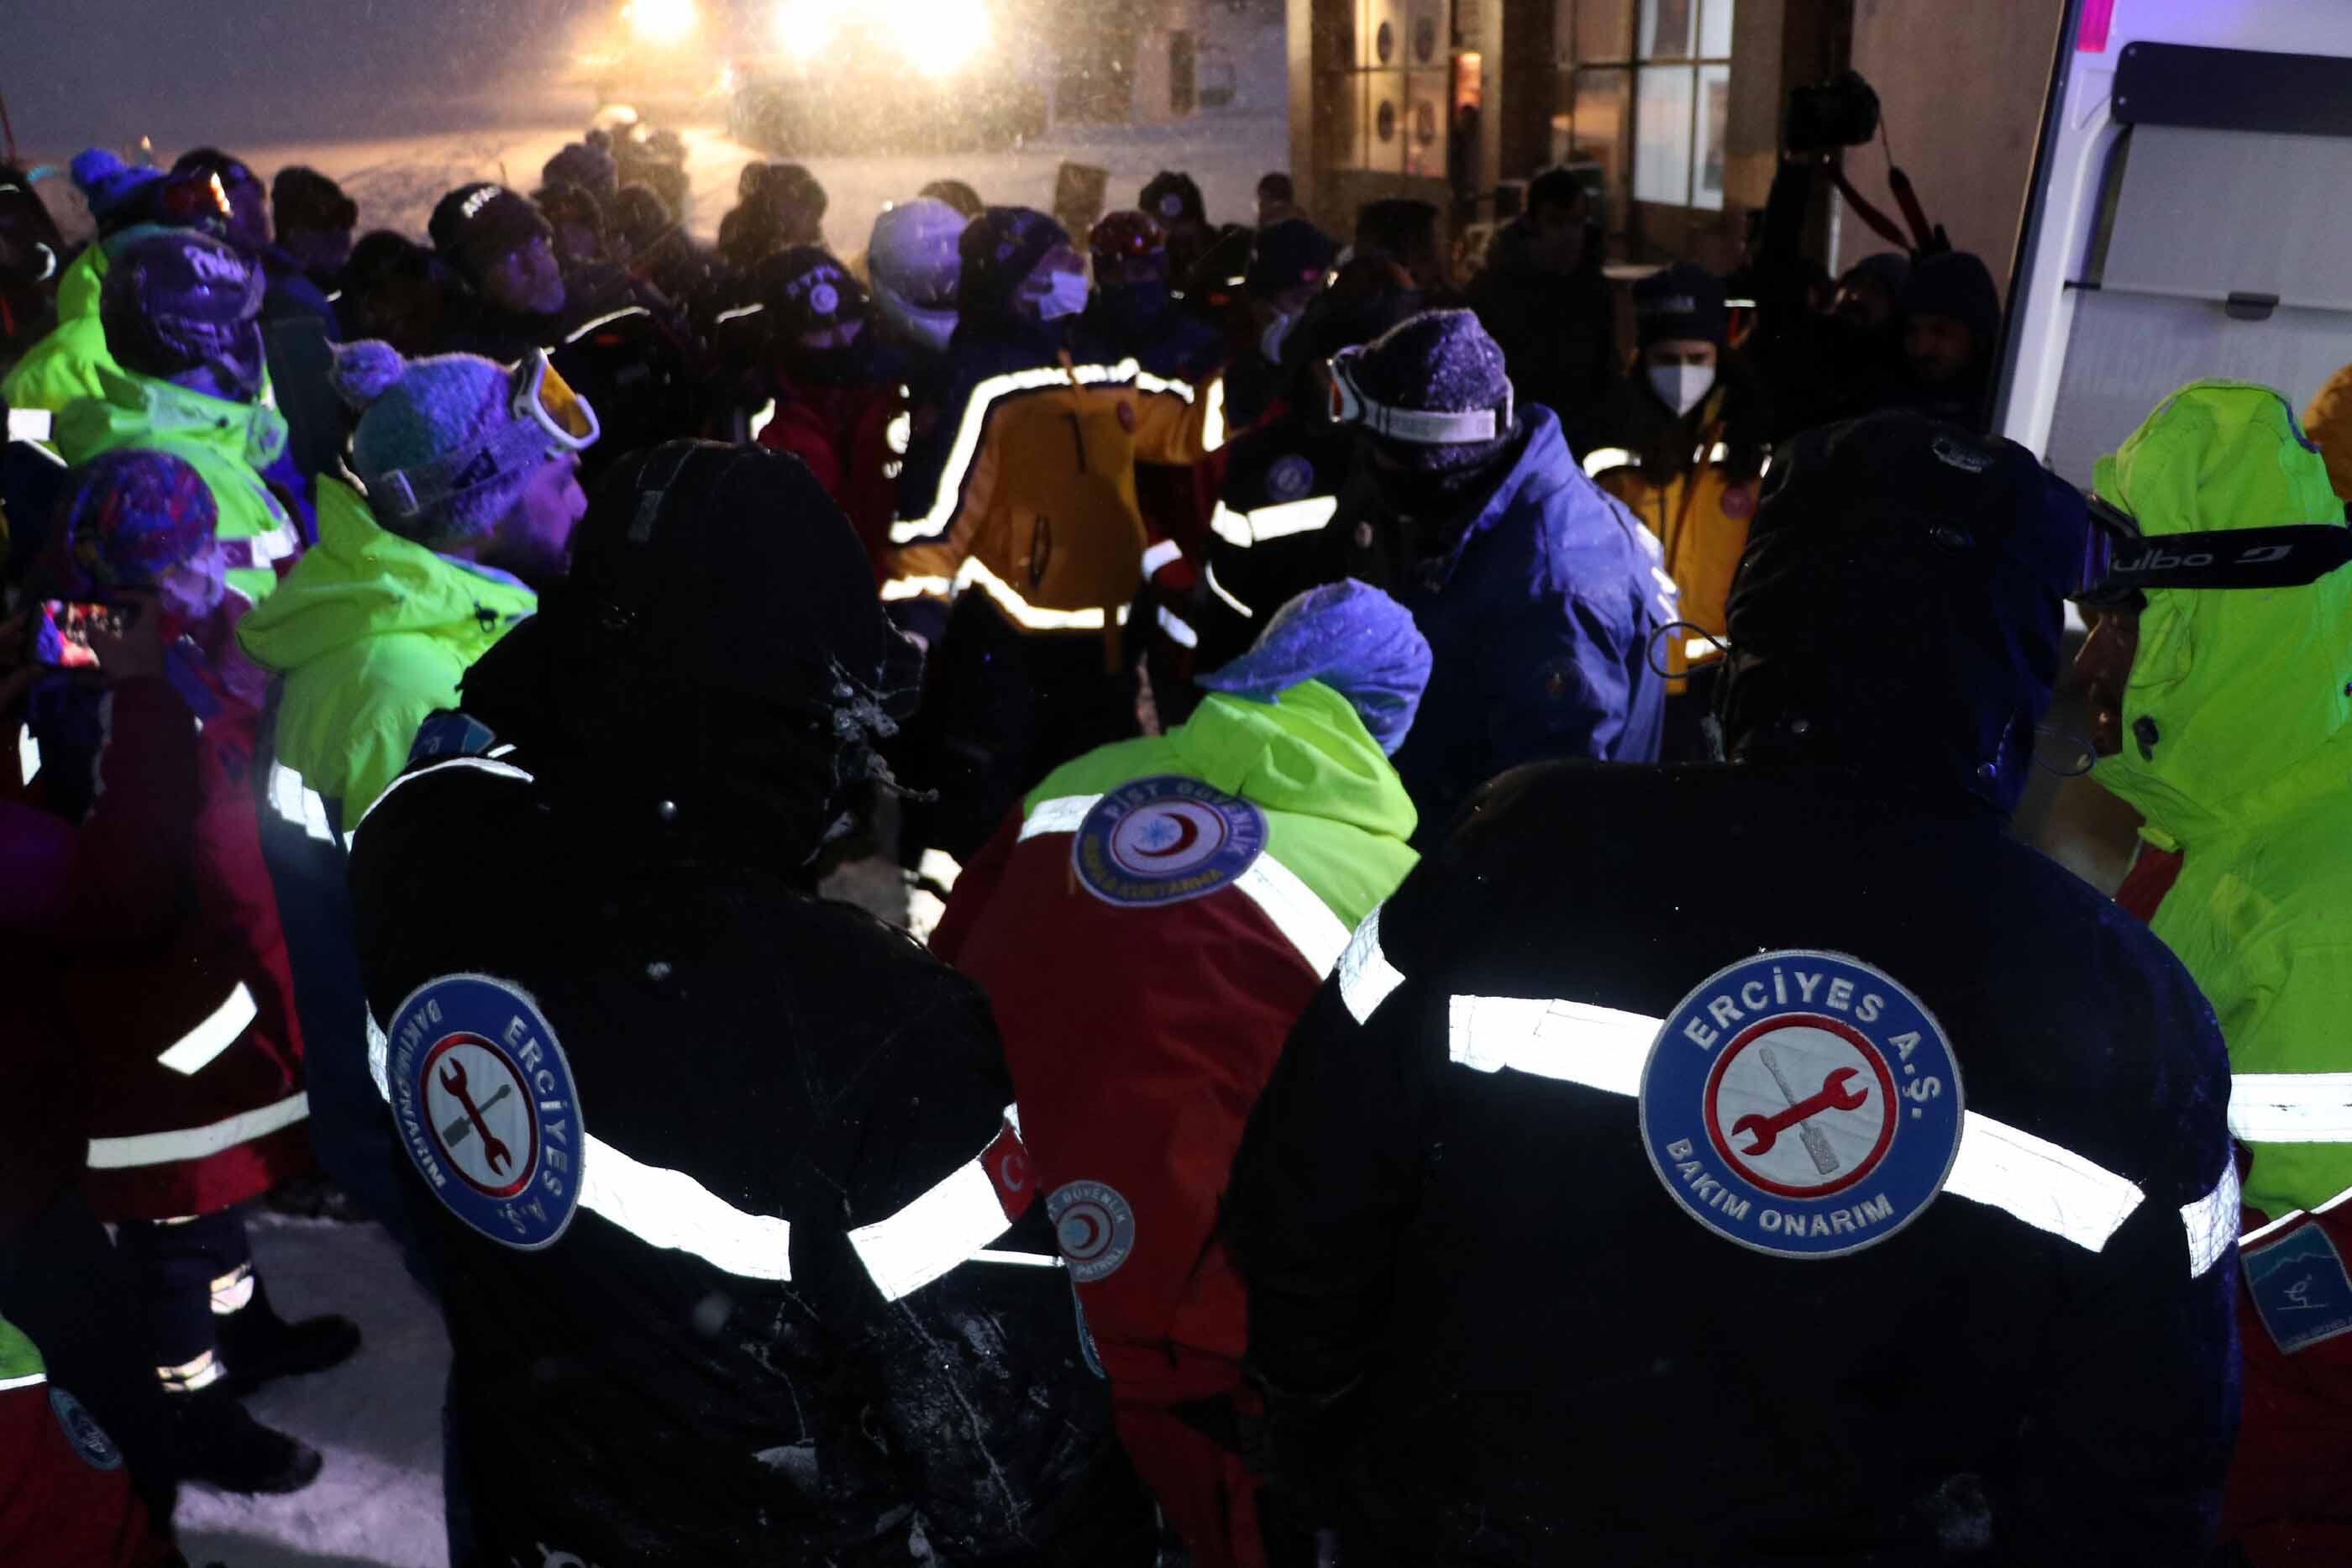 Erciyeste kar kütlesi altında kalan Kanadalı kayakçı hayatını kaybetti